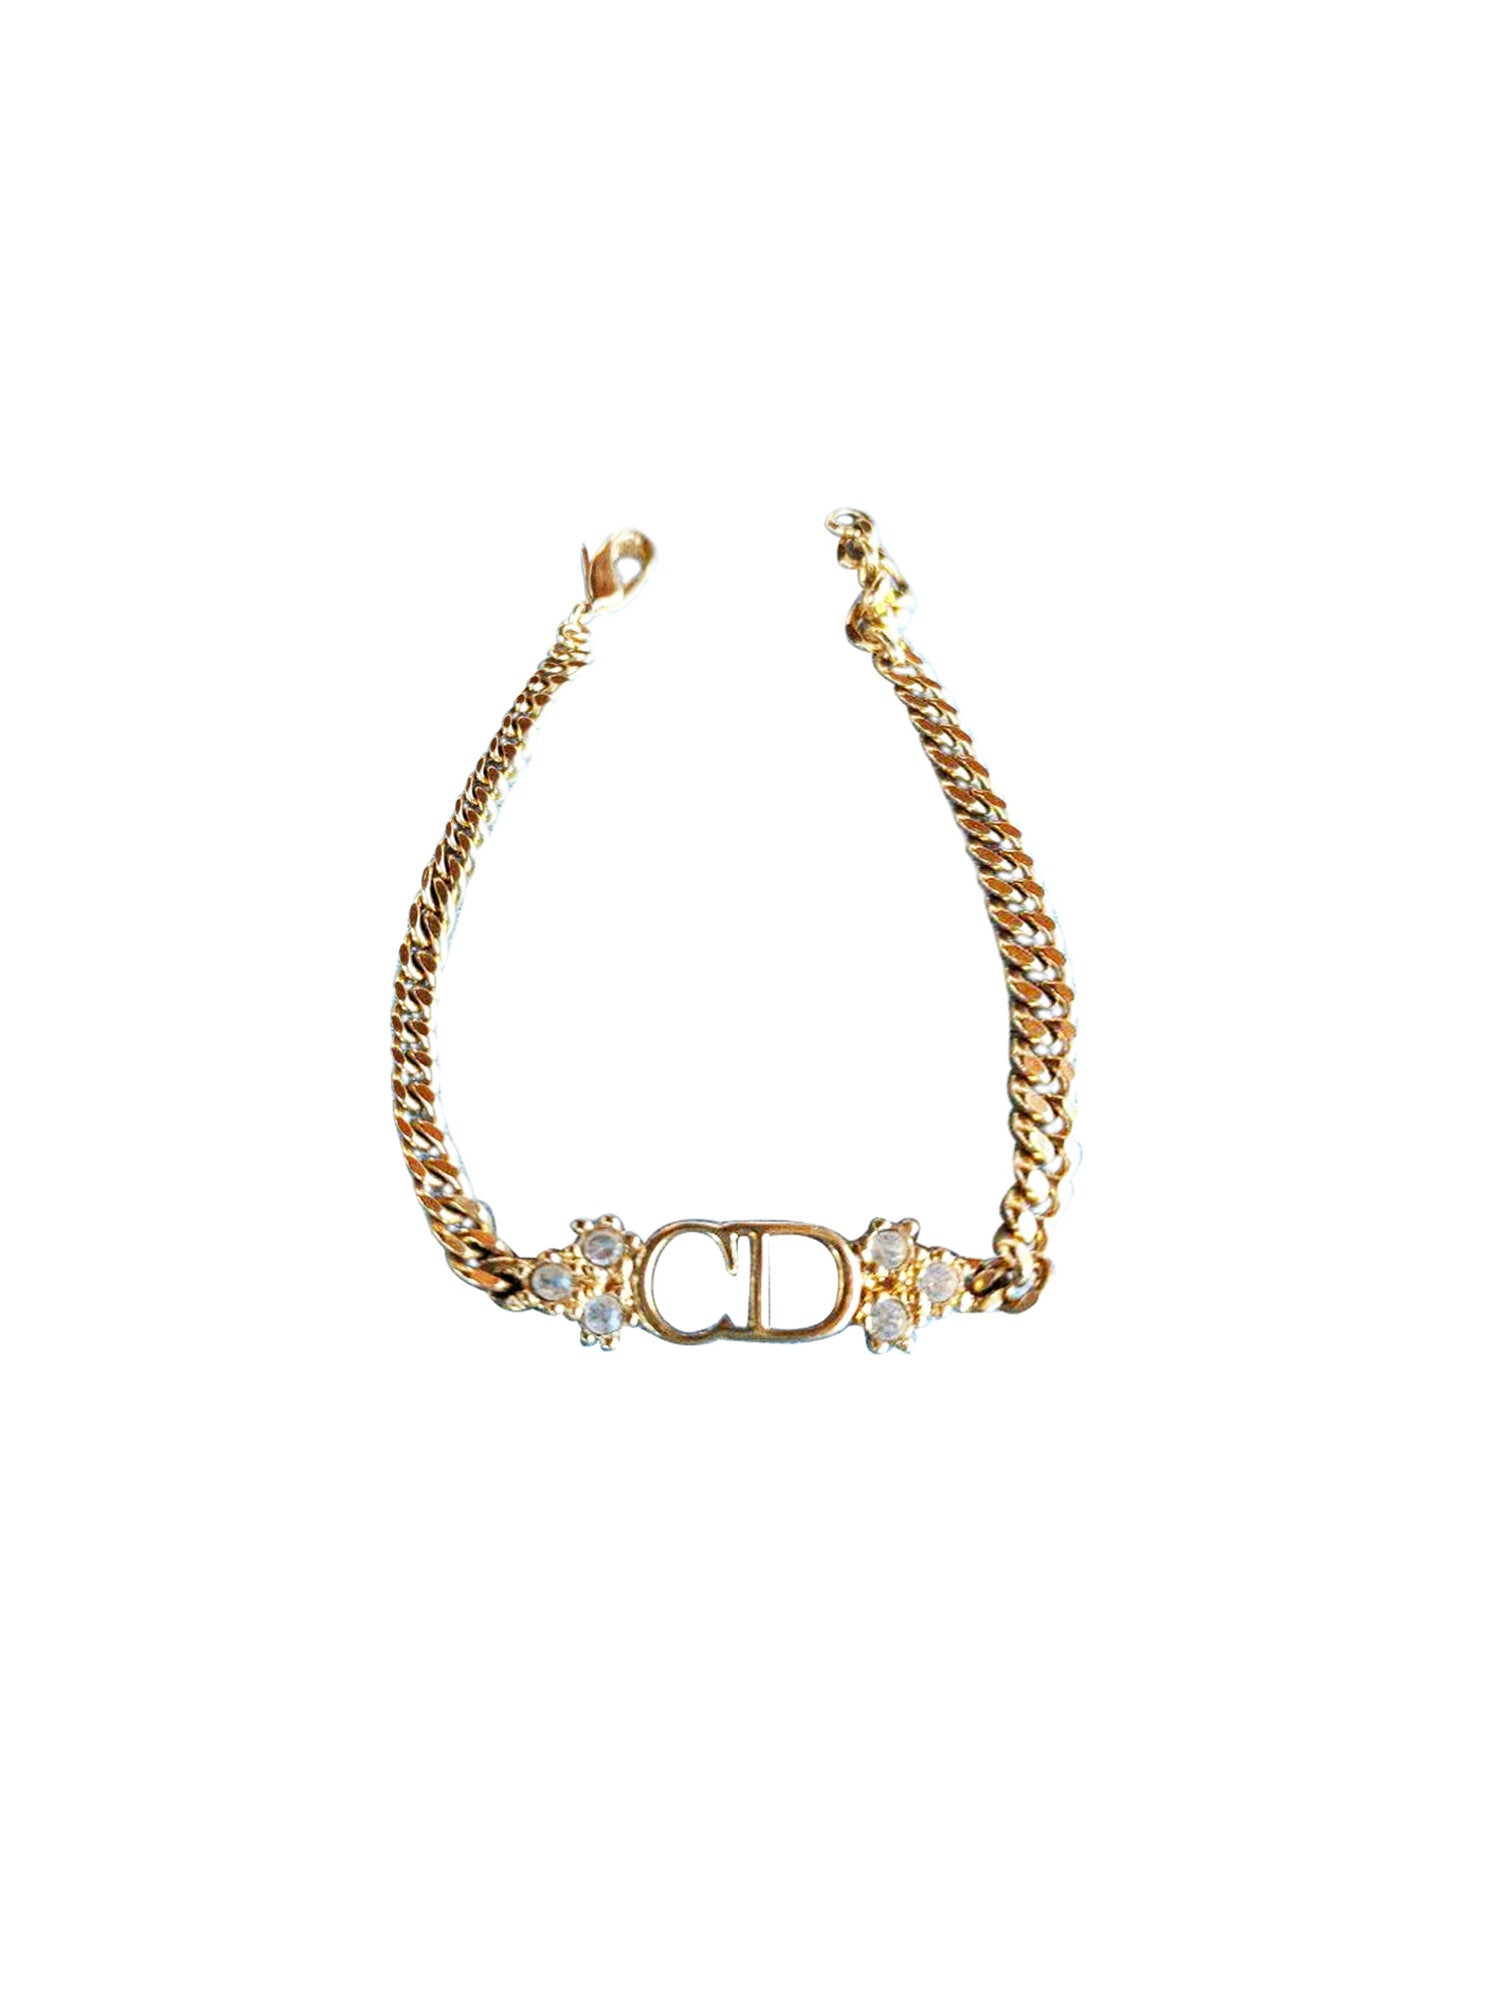 Christian Dior 2000s Gold CD Floral Bracelet